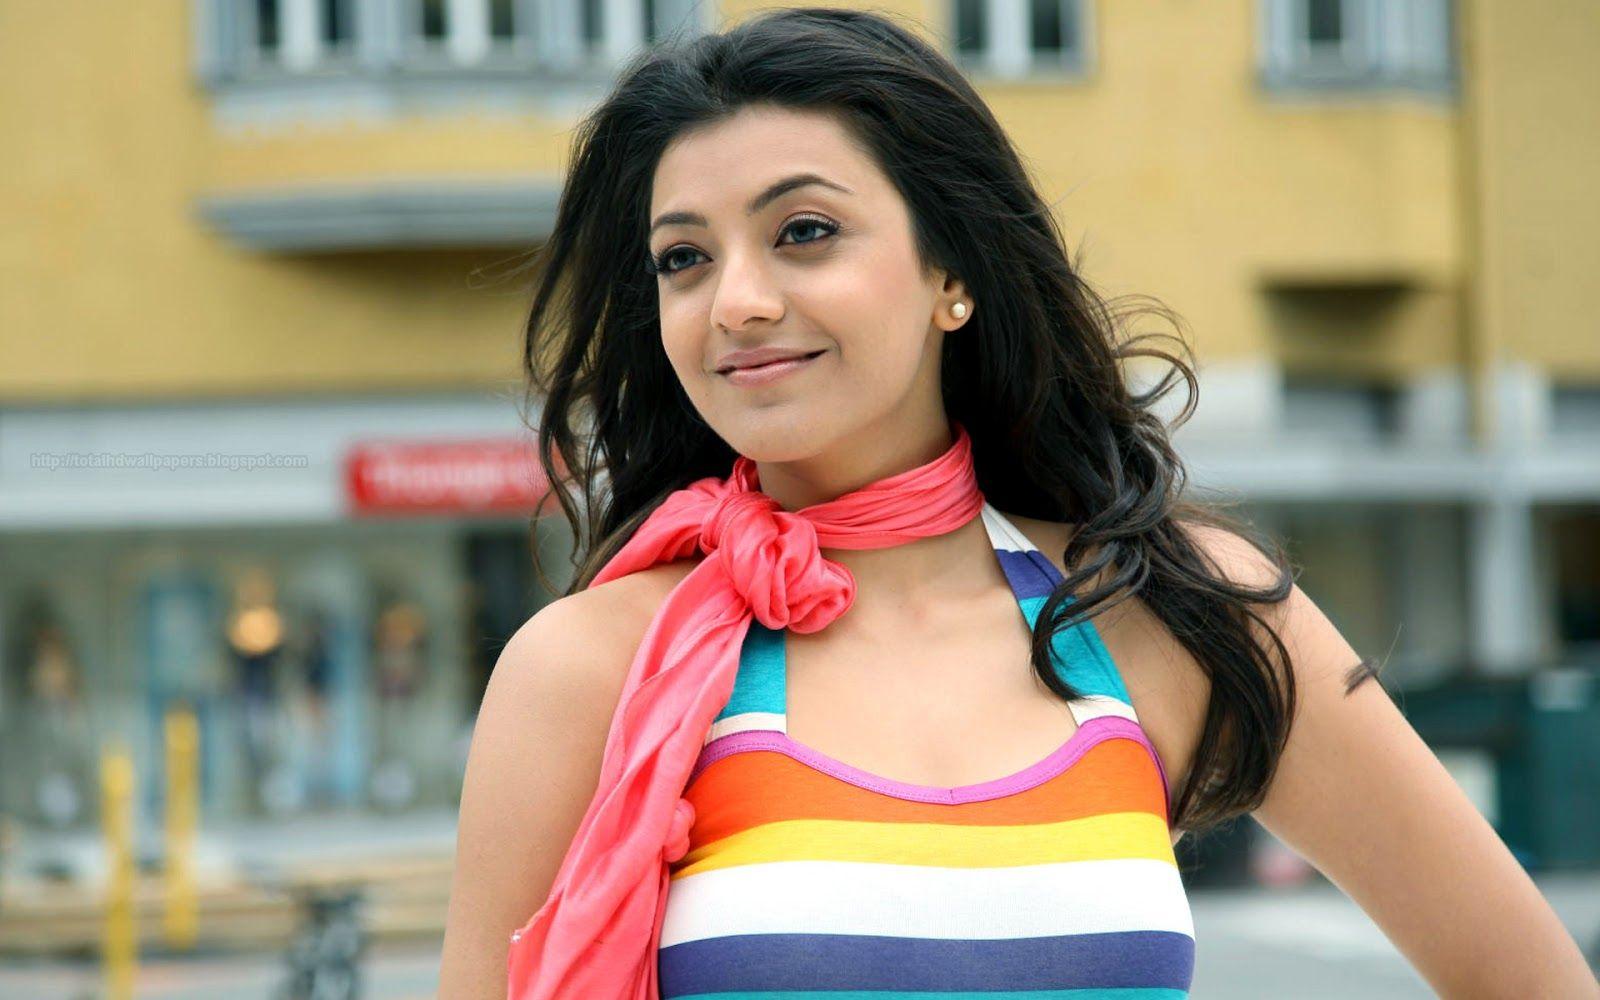 Bollywood HD wallpaper 1080p: Bollywood Actress HD Wallpaper 1080p